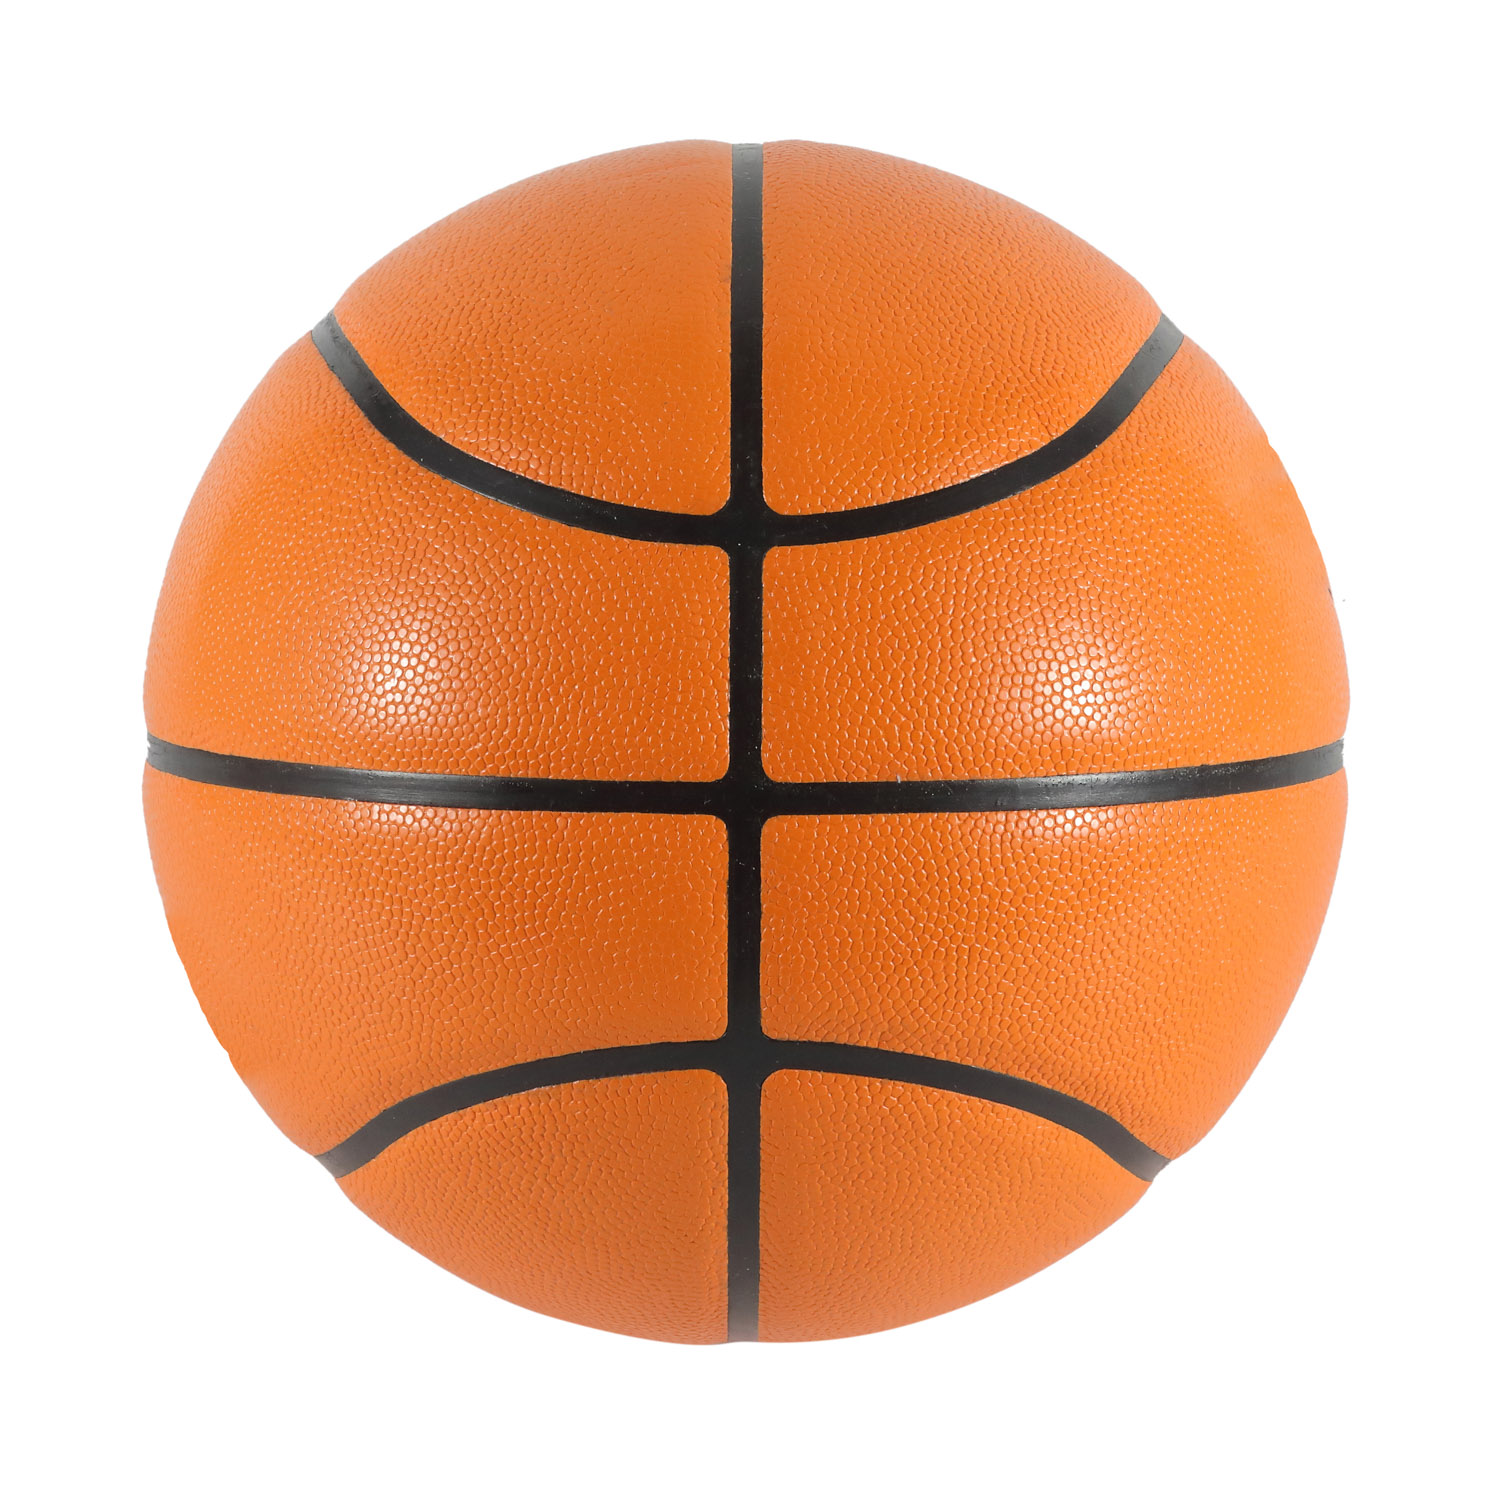 Capa de PU laminado de basquete de alta qualidade